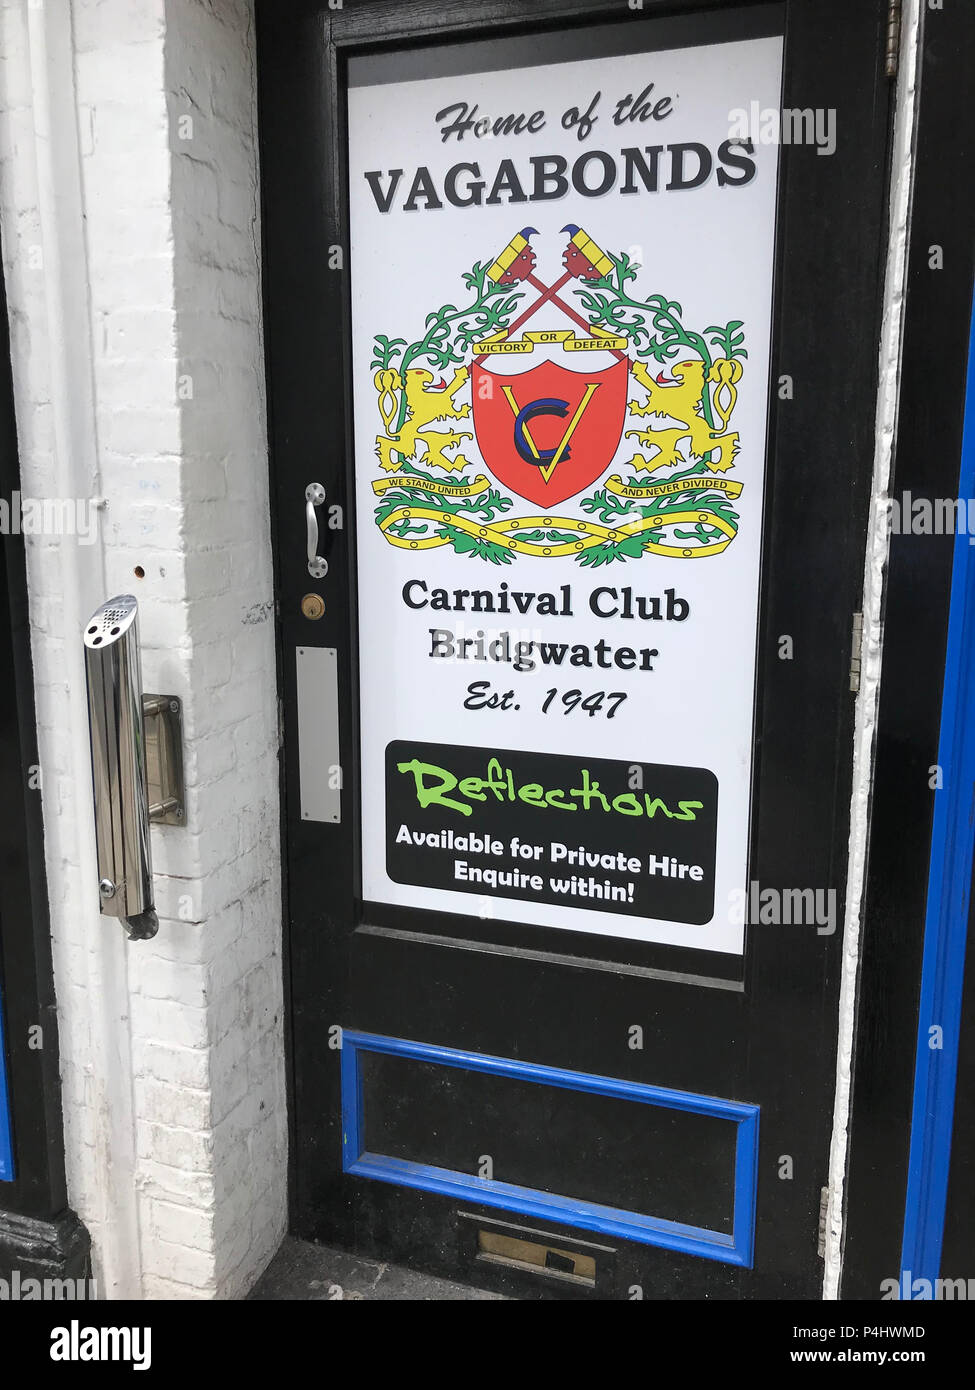 Accueil du Club Carnaval Vagabonds, high st, Bridgwater - Club de réflexions, la porte de la ville de Bridgwater, Somerset, England, UK Banque D'Images